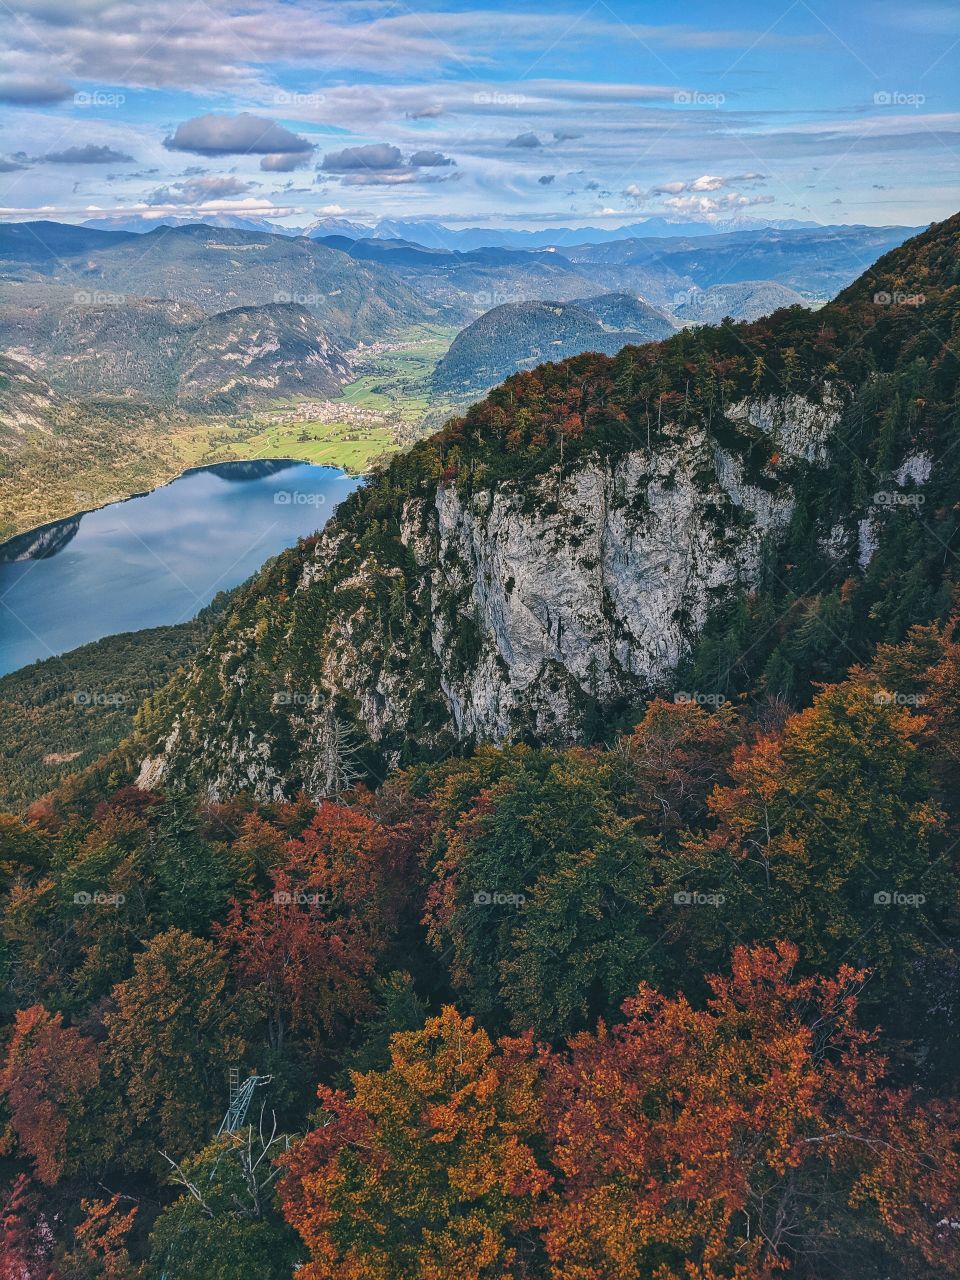 Amazing autumn view from the mountains to blue lake, Bohinj, Slovenia